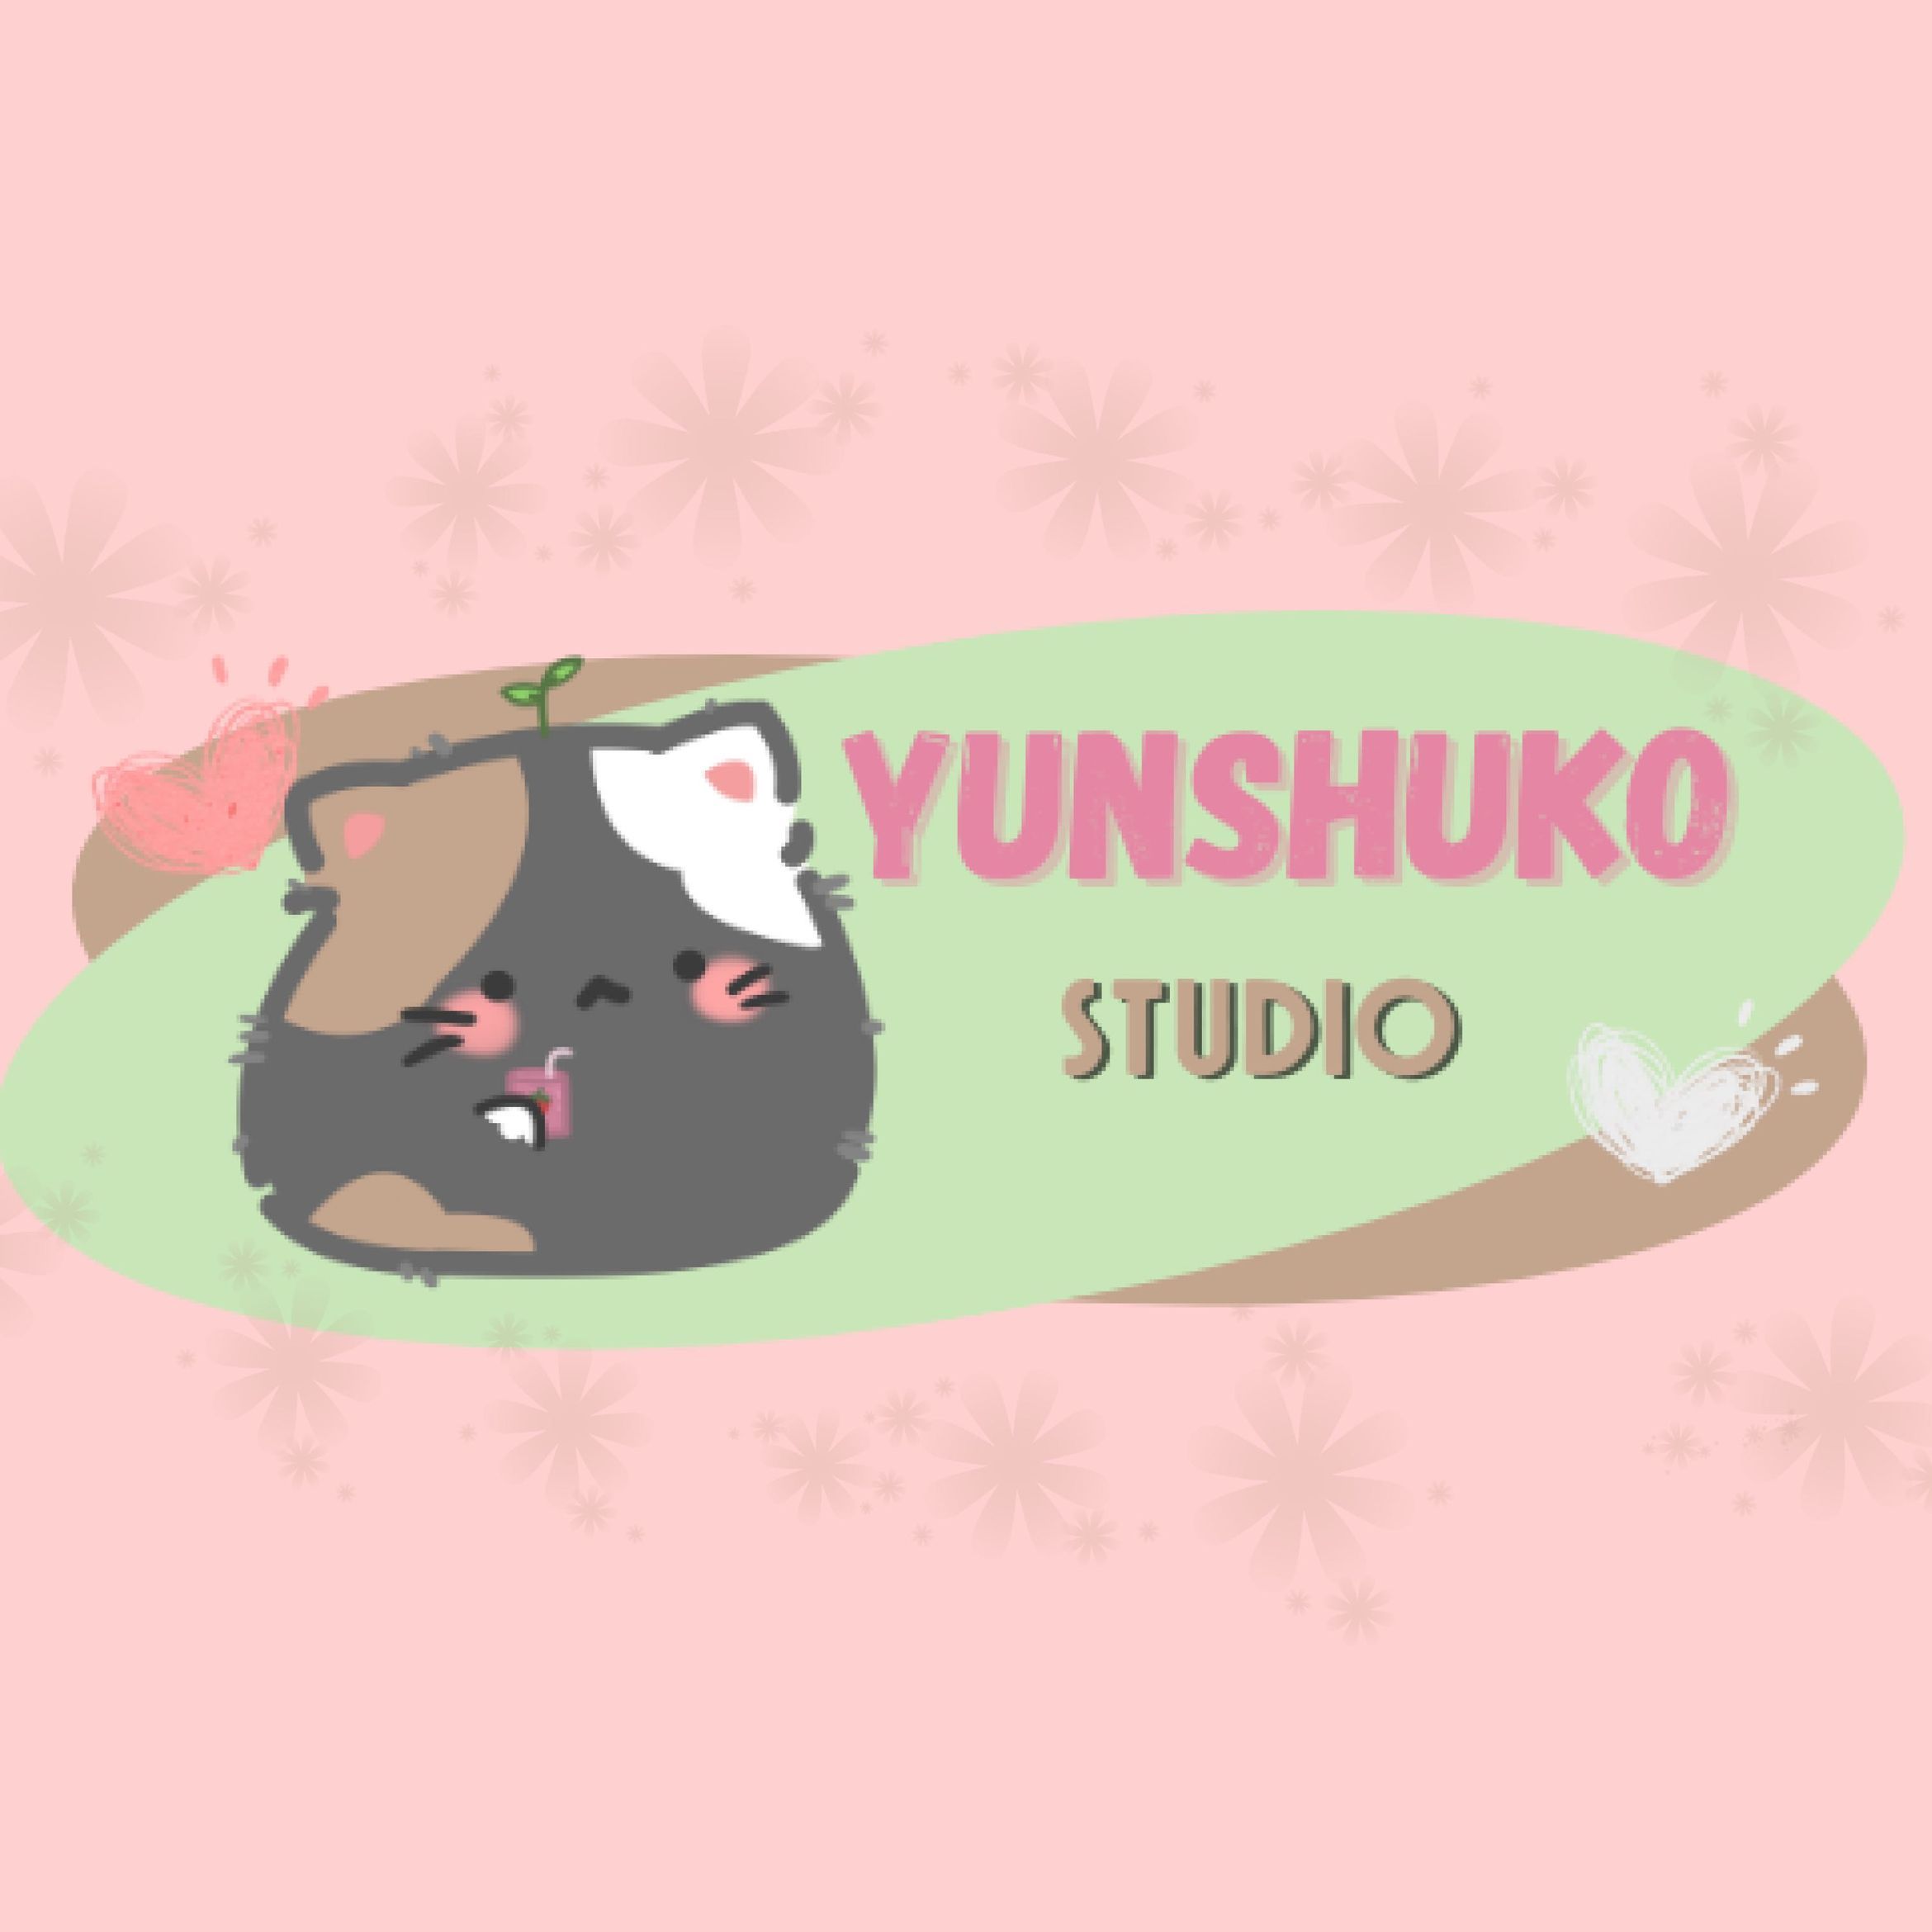 Yunshuko Studio, 1, Duluth, 30096